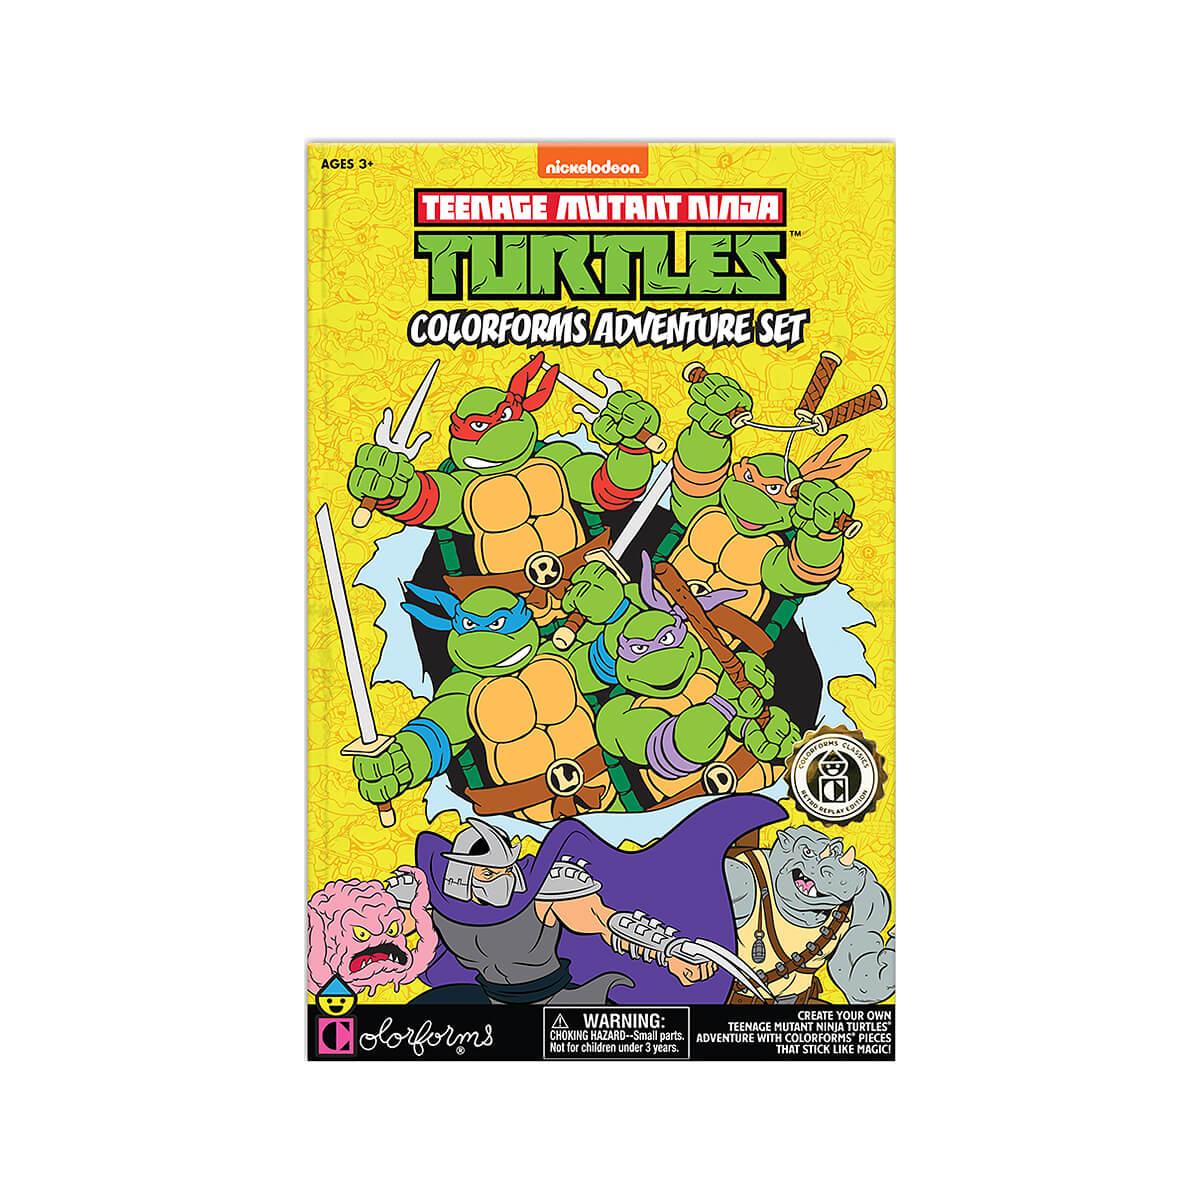  Teenage Mutant Ninja Turtles Colorforms Adventure Set